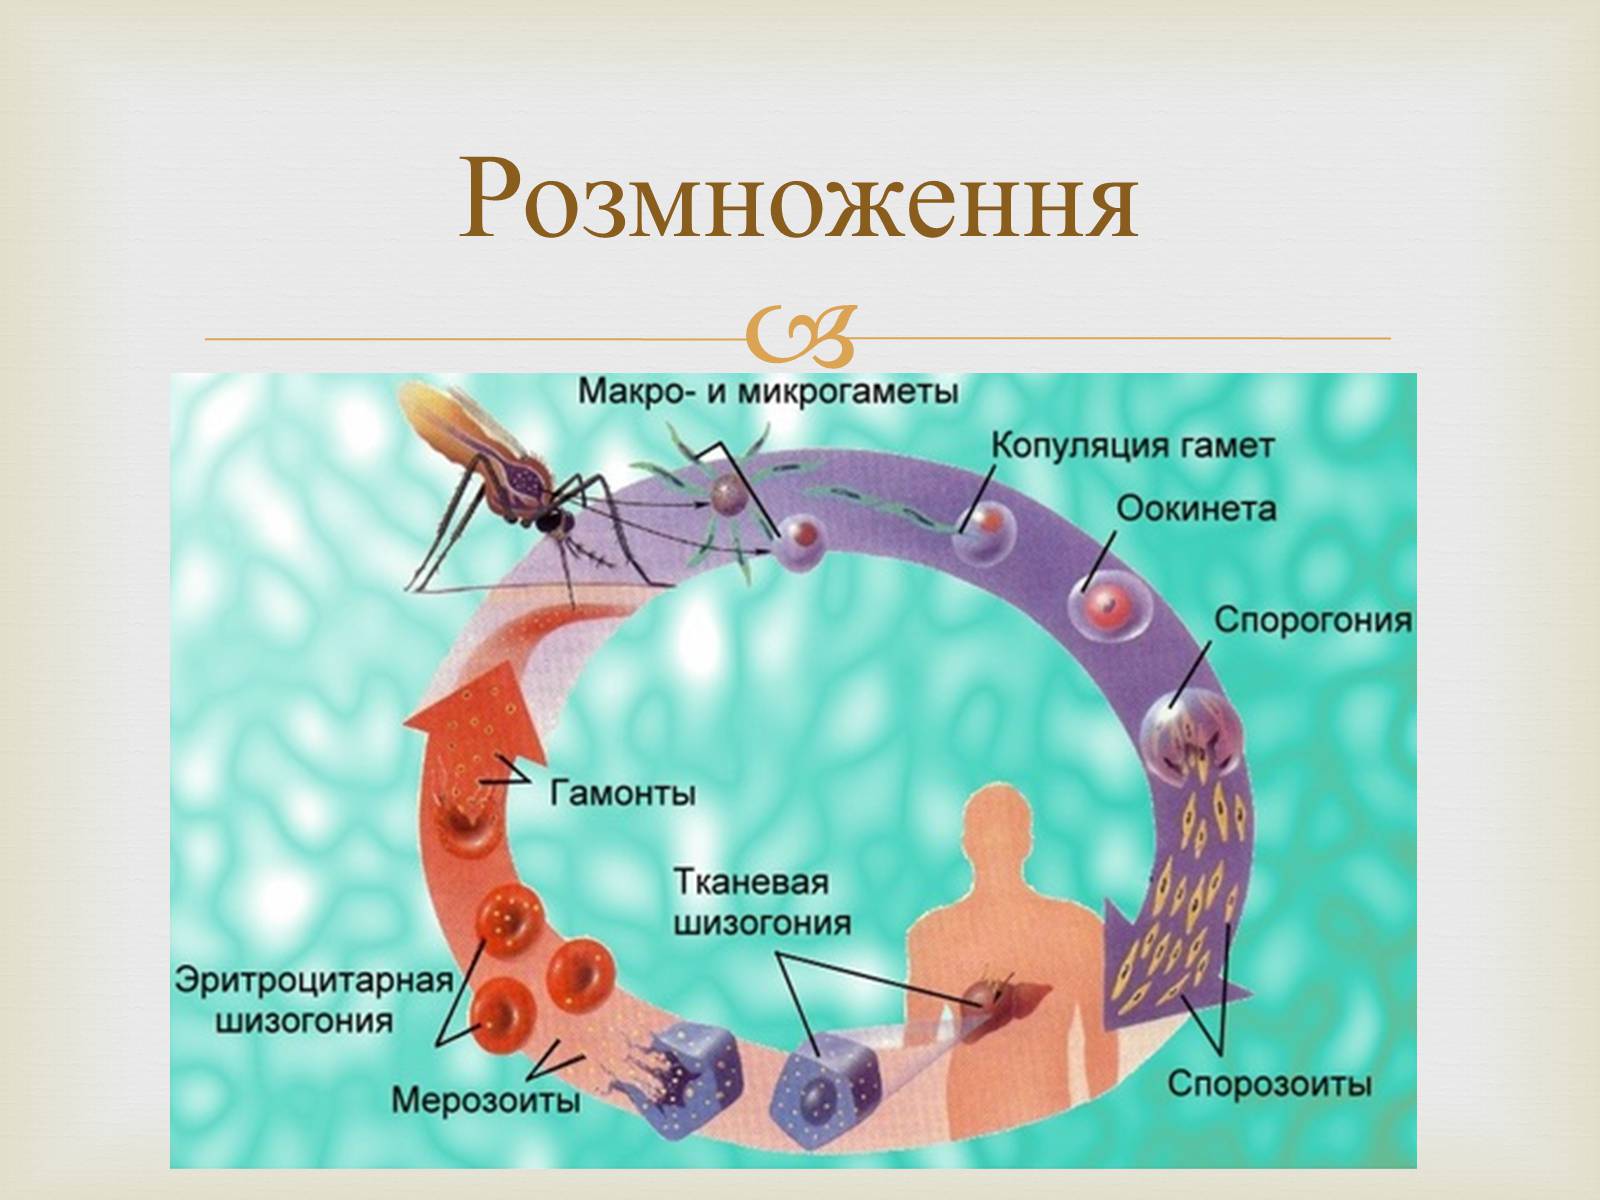 Хозяев в цикле развития малярийного плазмодия. Цикл малярийного плазмодия схема. Жизненный цикл малярийного плазмодия. Цикл размножения малярийного плазмодия схема. Схема развития малярийного плазмодия.